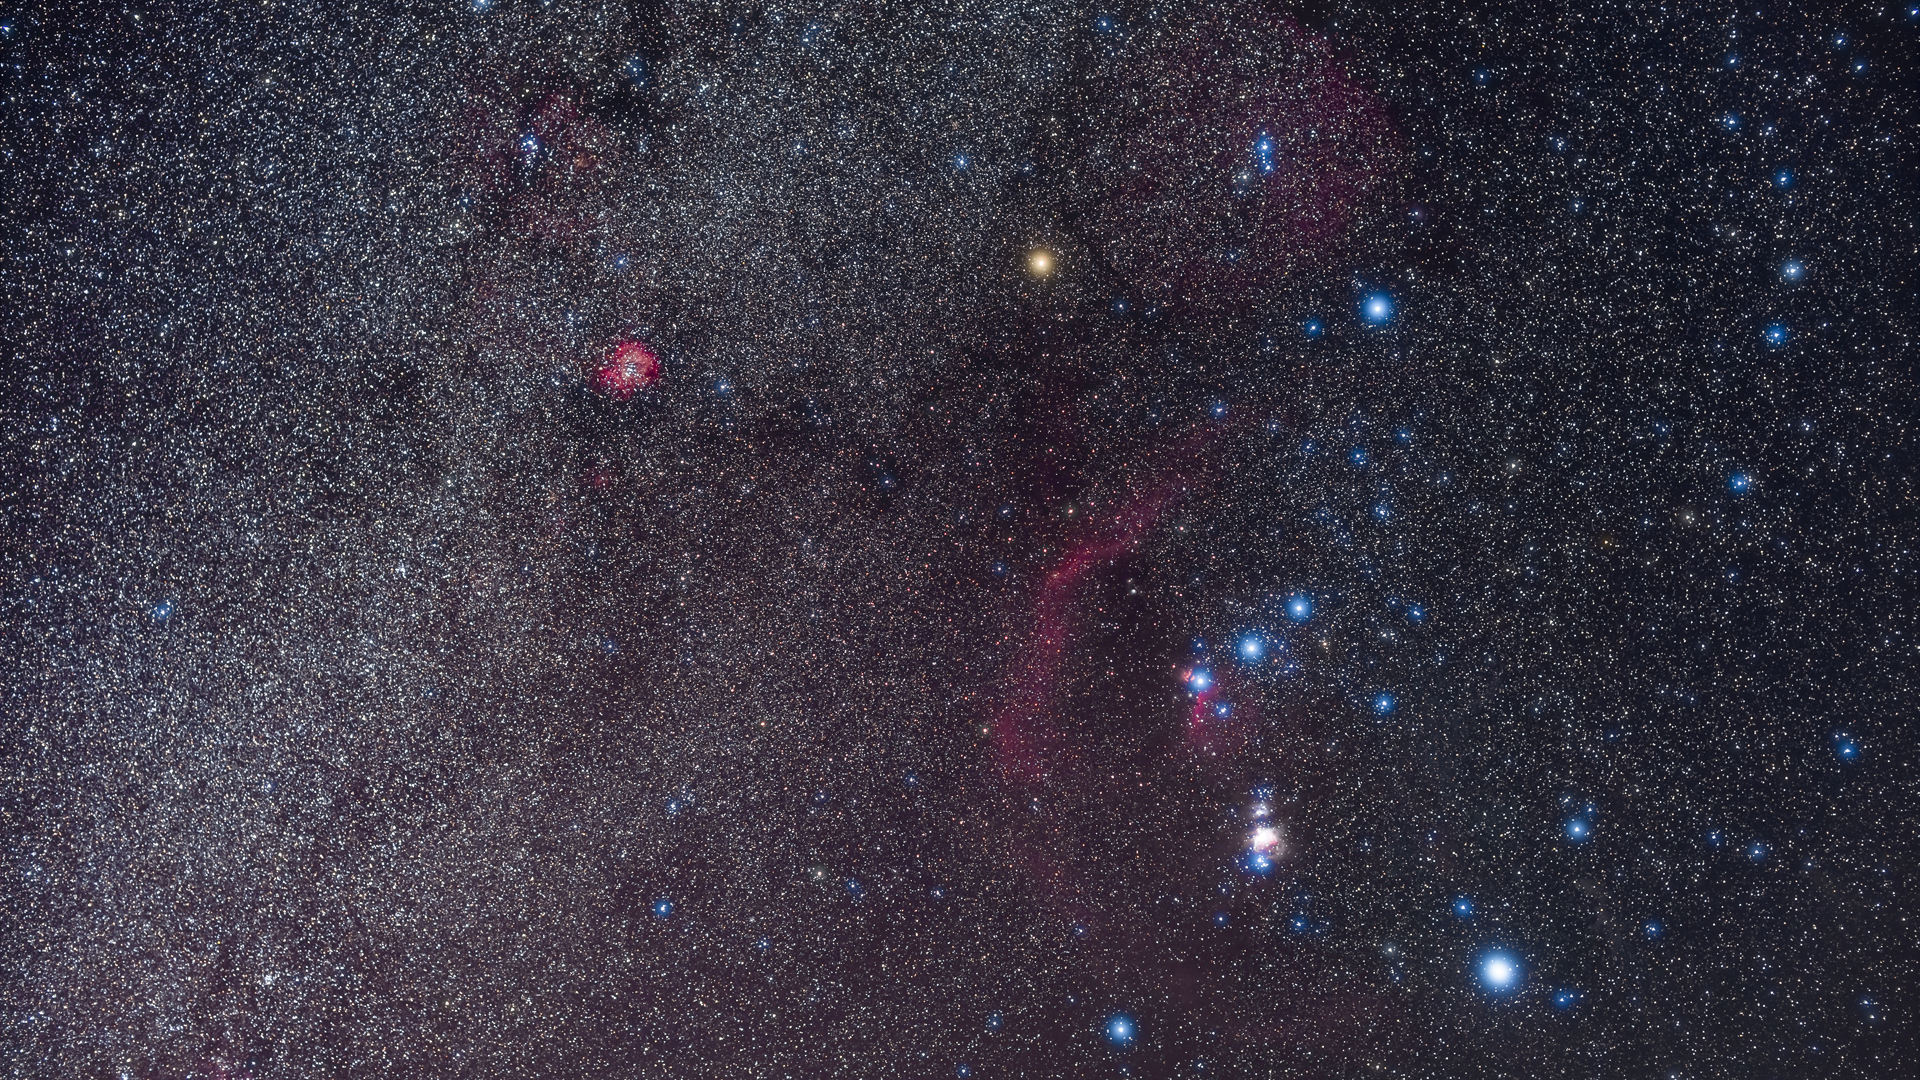 La estrella gigante roja Betelgeuse forma el hombro izquierdo de la constelación de Orión.